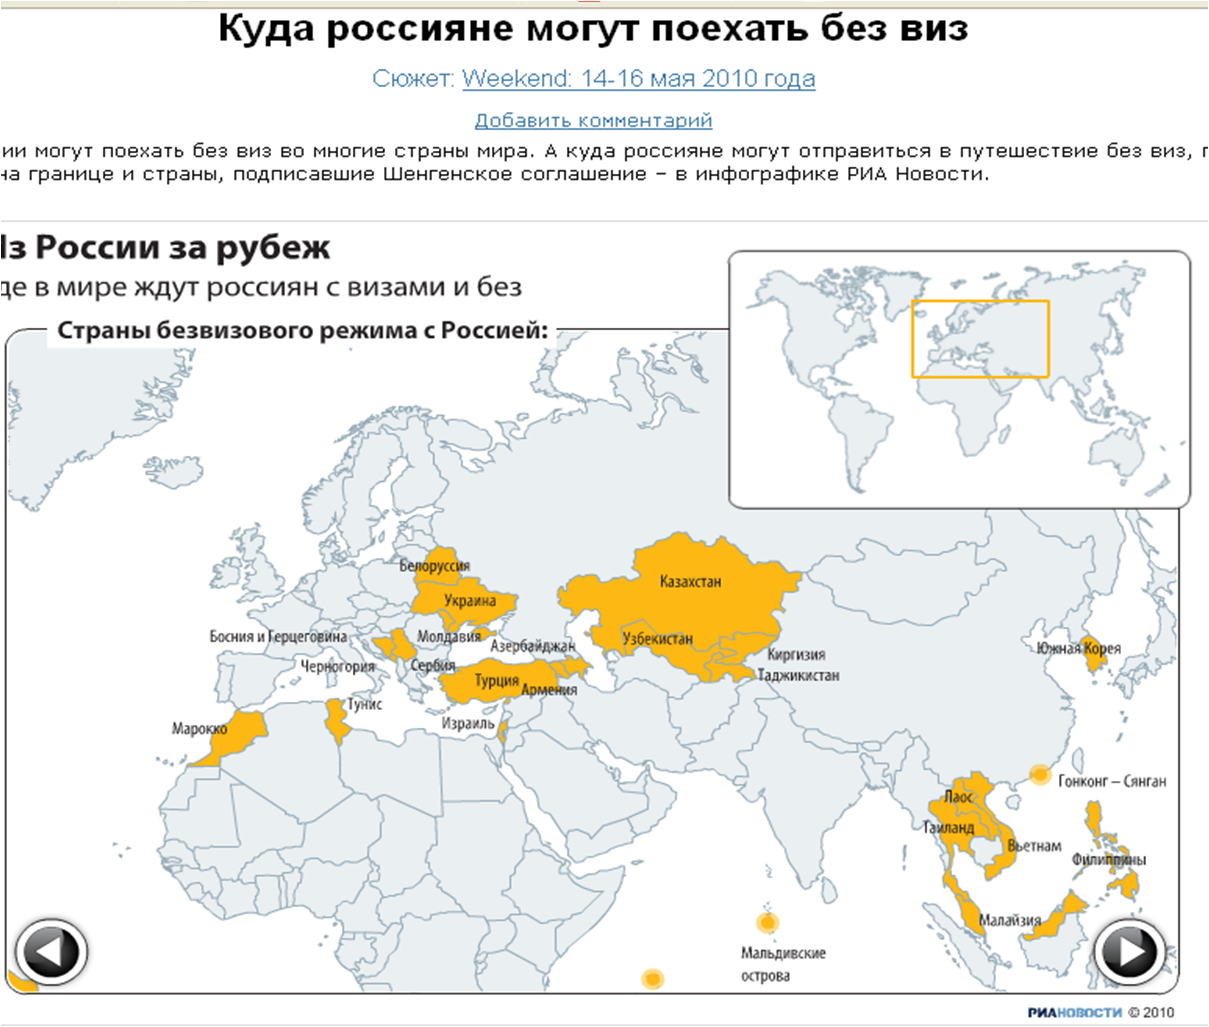 Таджикистан страны без визы. Страны без визы для России. Куда россияне могут поехать без визы. Безвизовые страны для России. Карта стран куда можно поехать россиянам.